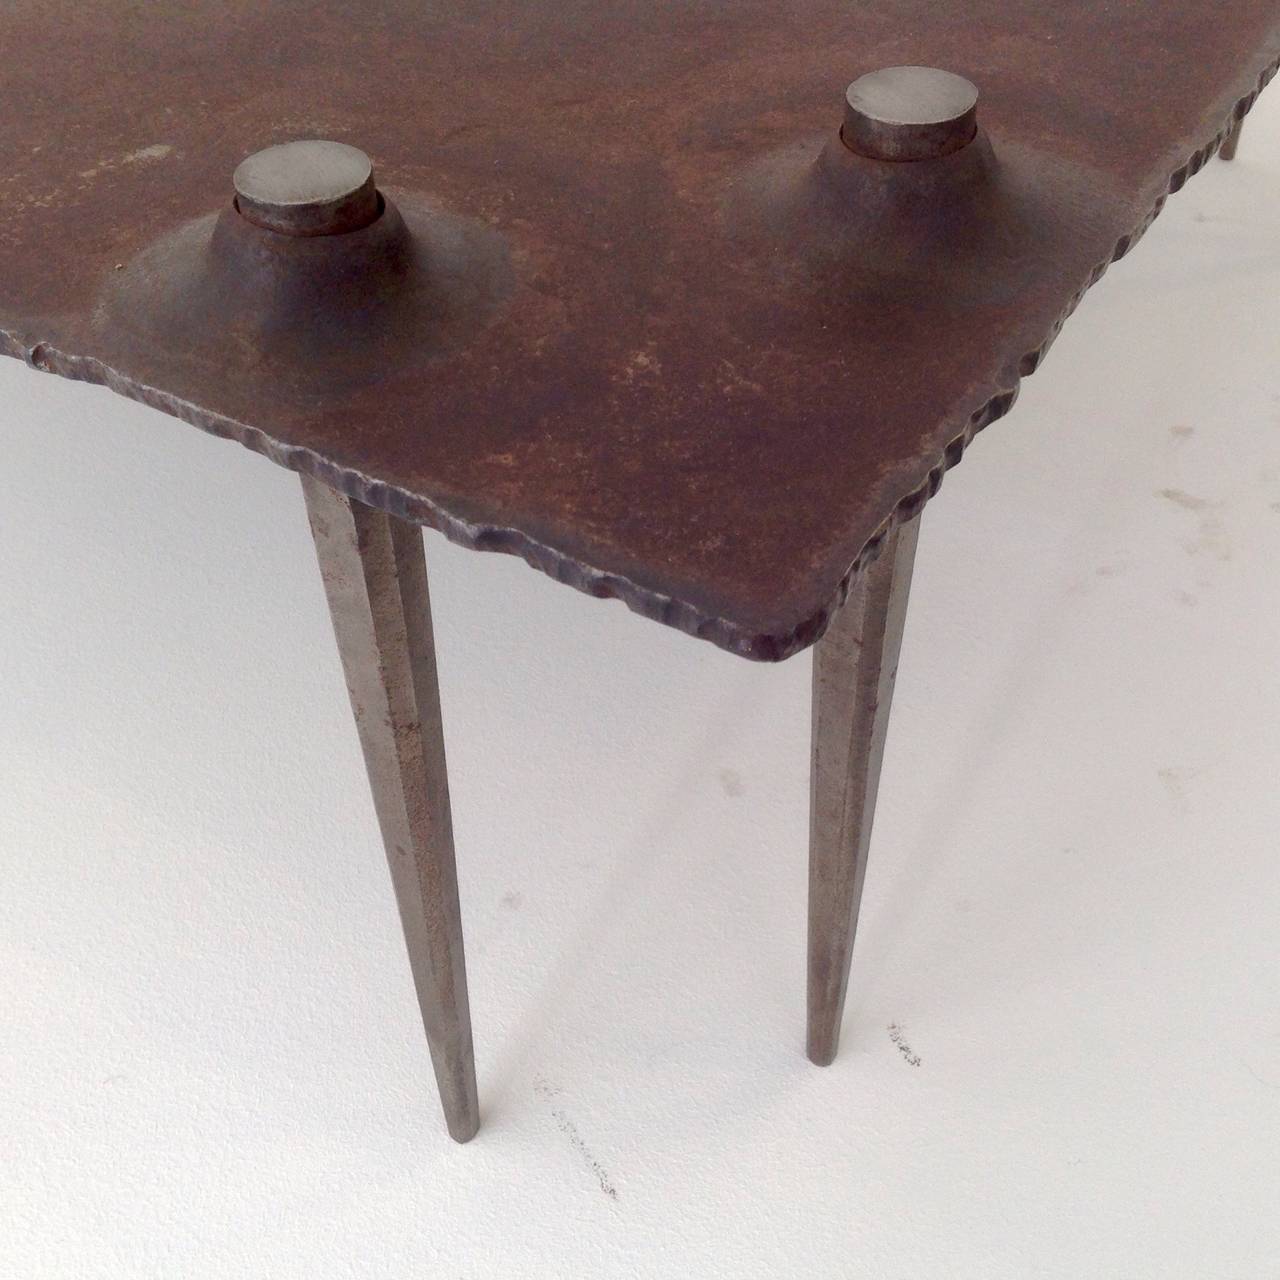 Table basse brutaliste de forme fantastique par Idir Mecibah, 1958-2013, produite par Smederij Moerman, 1998.
Cette table fait partie de la série Scrab, conçue à la fin des années 1980 et produite jusqu'à la fin des années 1990.
La table est faite